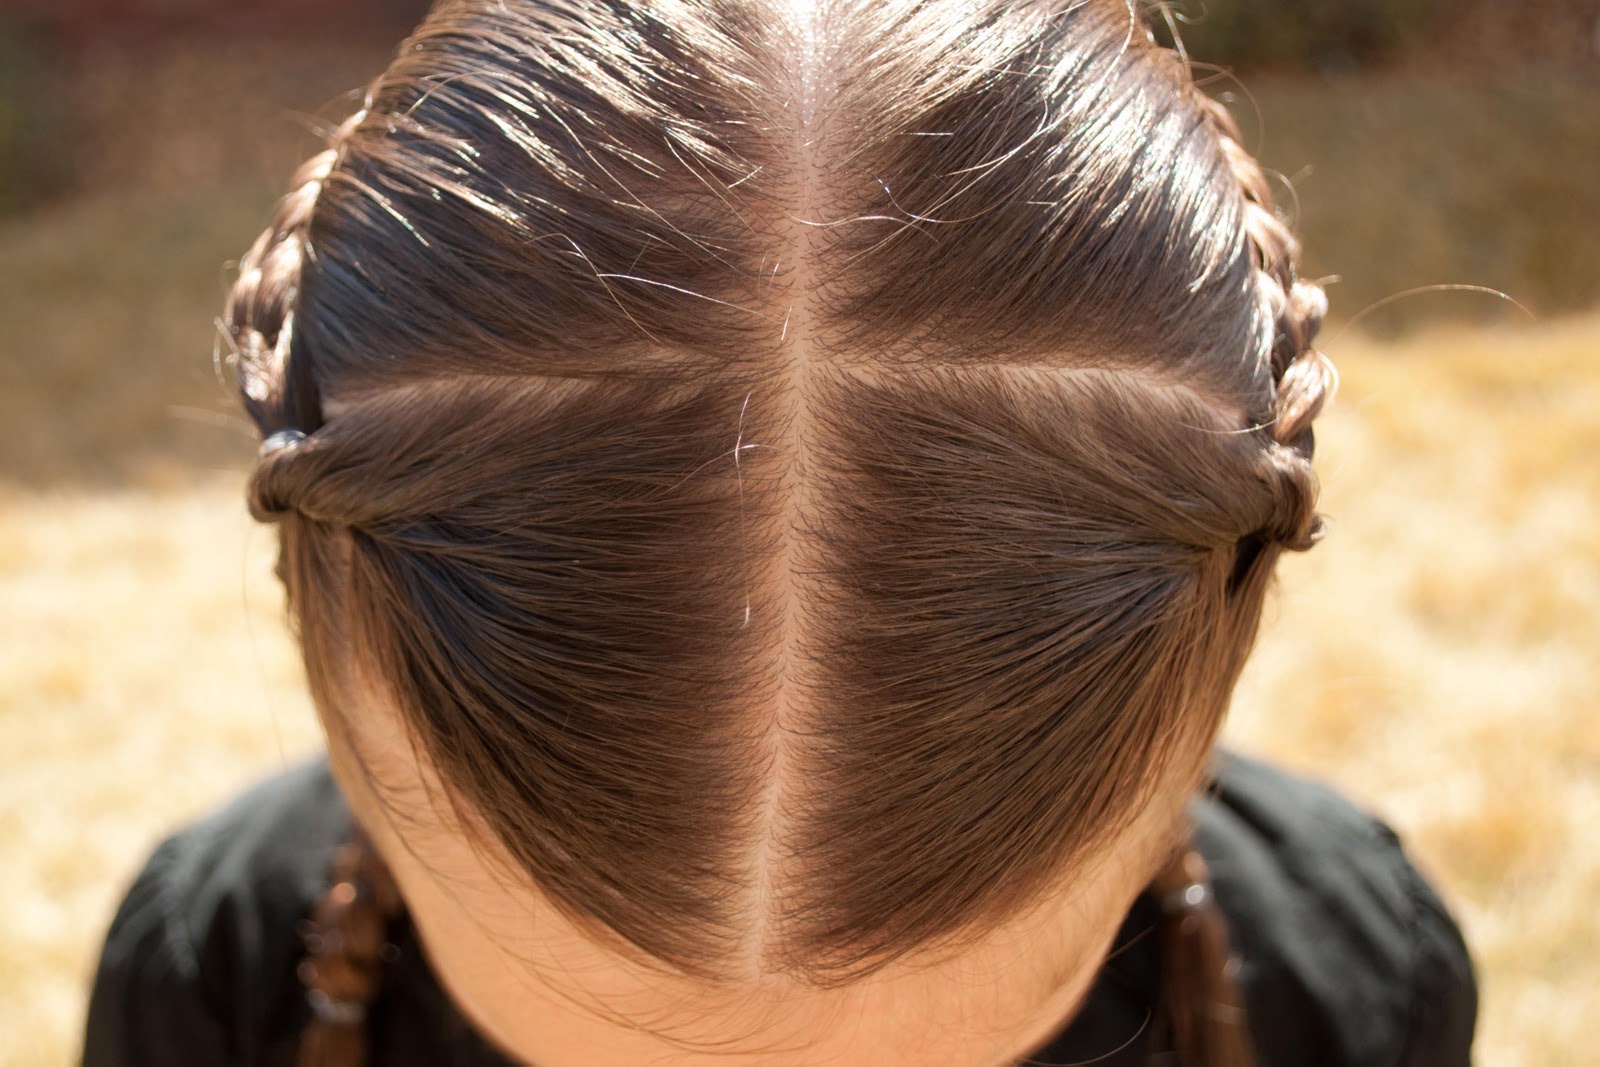 Как разделить волосы на две части самой себе ровно